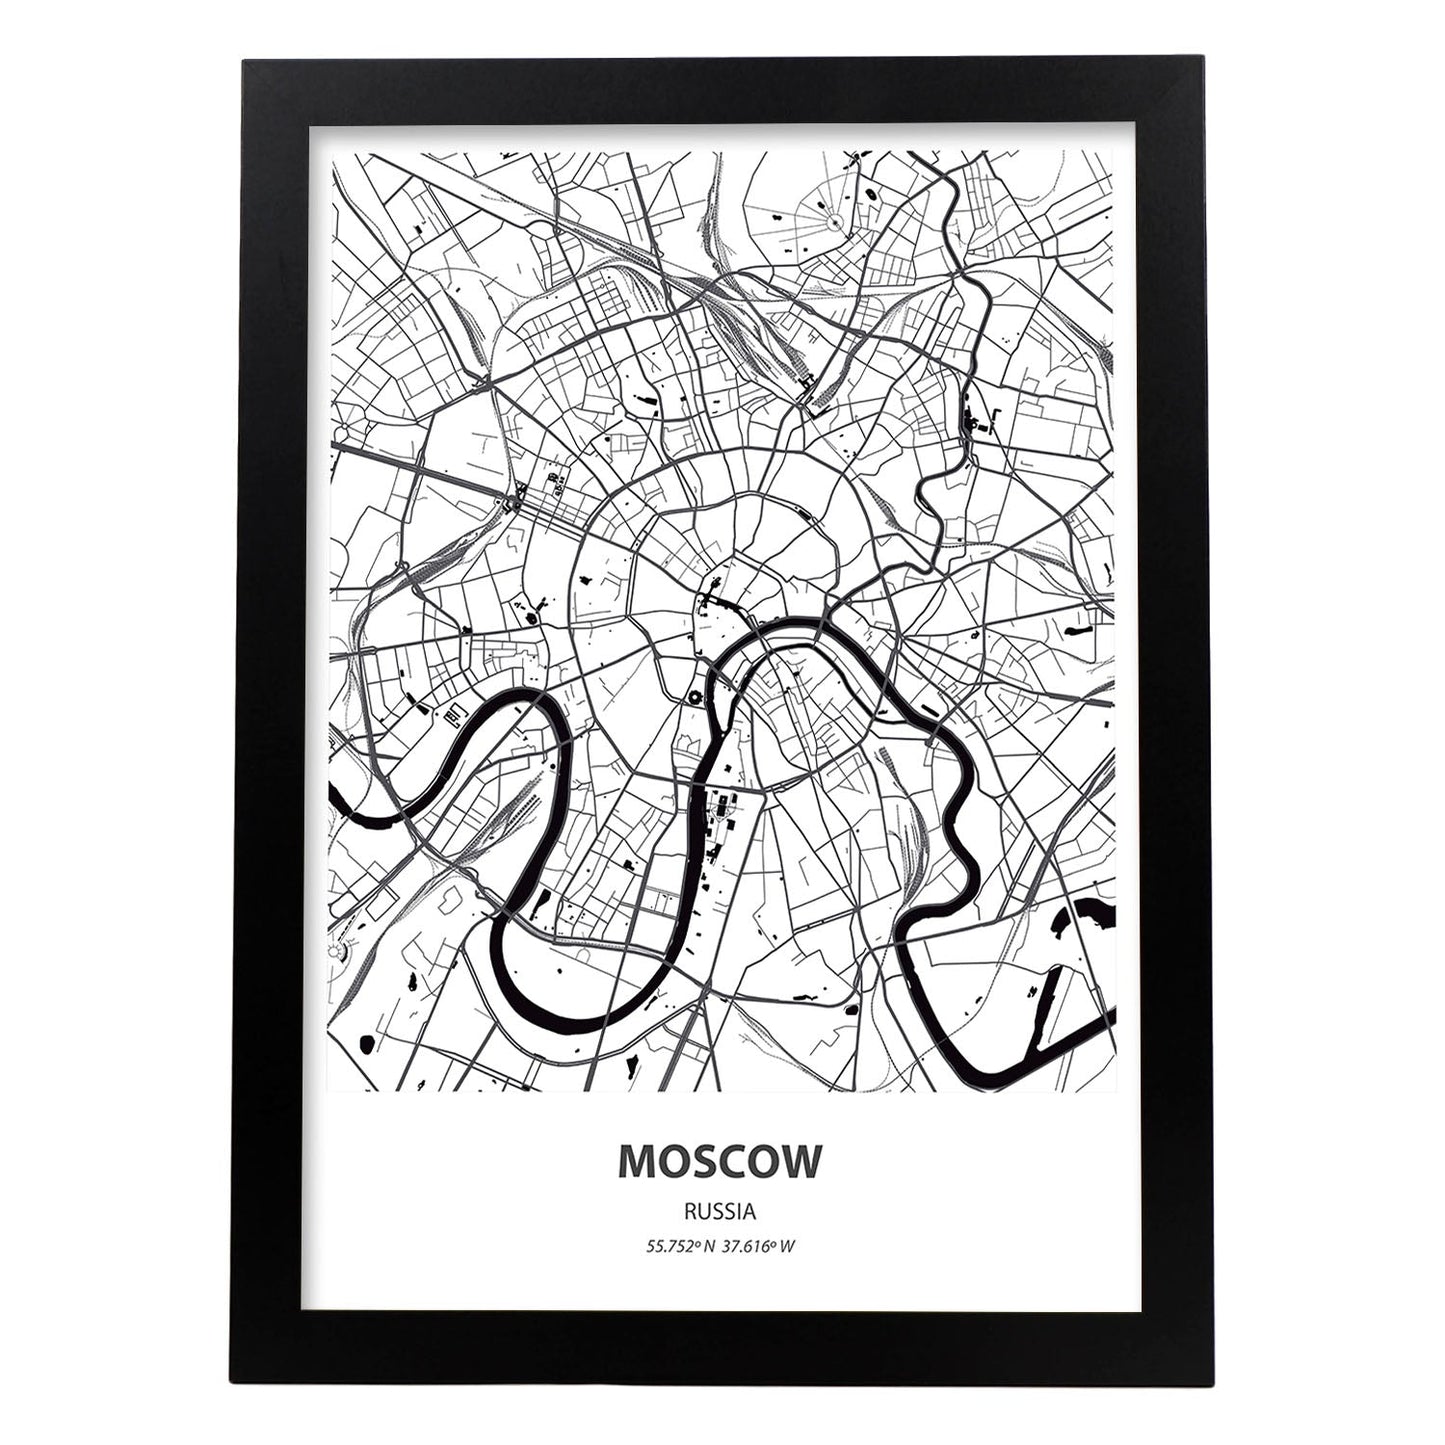 Poster con mapa de Moscow - Rusia. Láminas de ciudades de Asia con mares y ríos en color negro.-Artwork-Nacnic-A3-Marco Negro-Nacnic Estudio SL